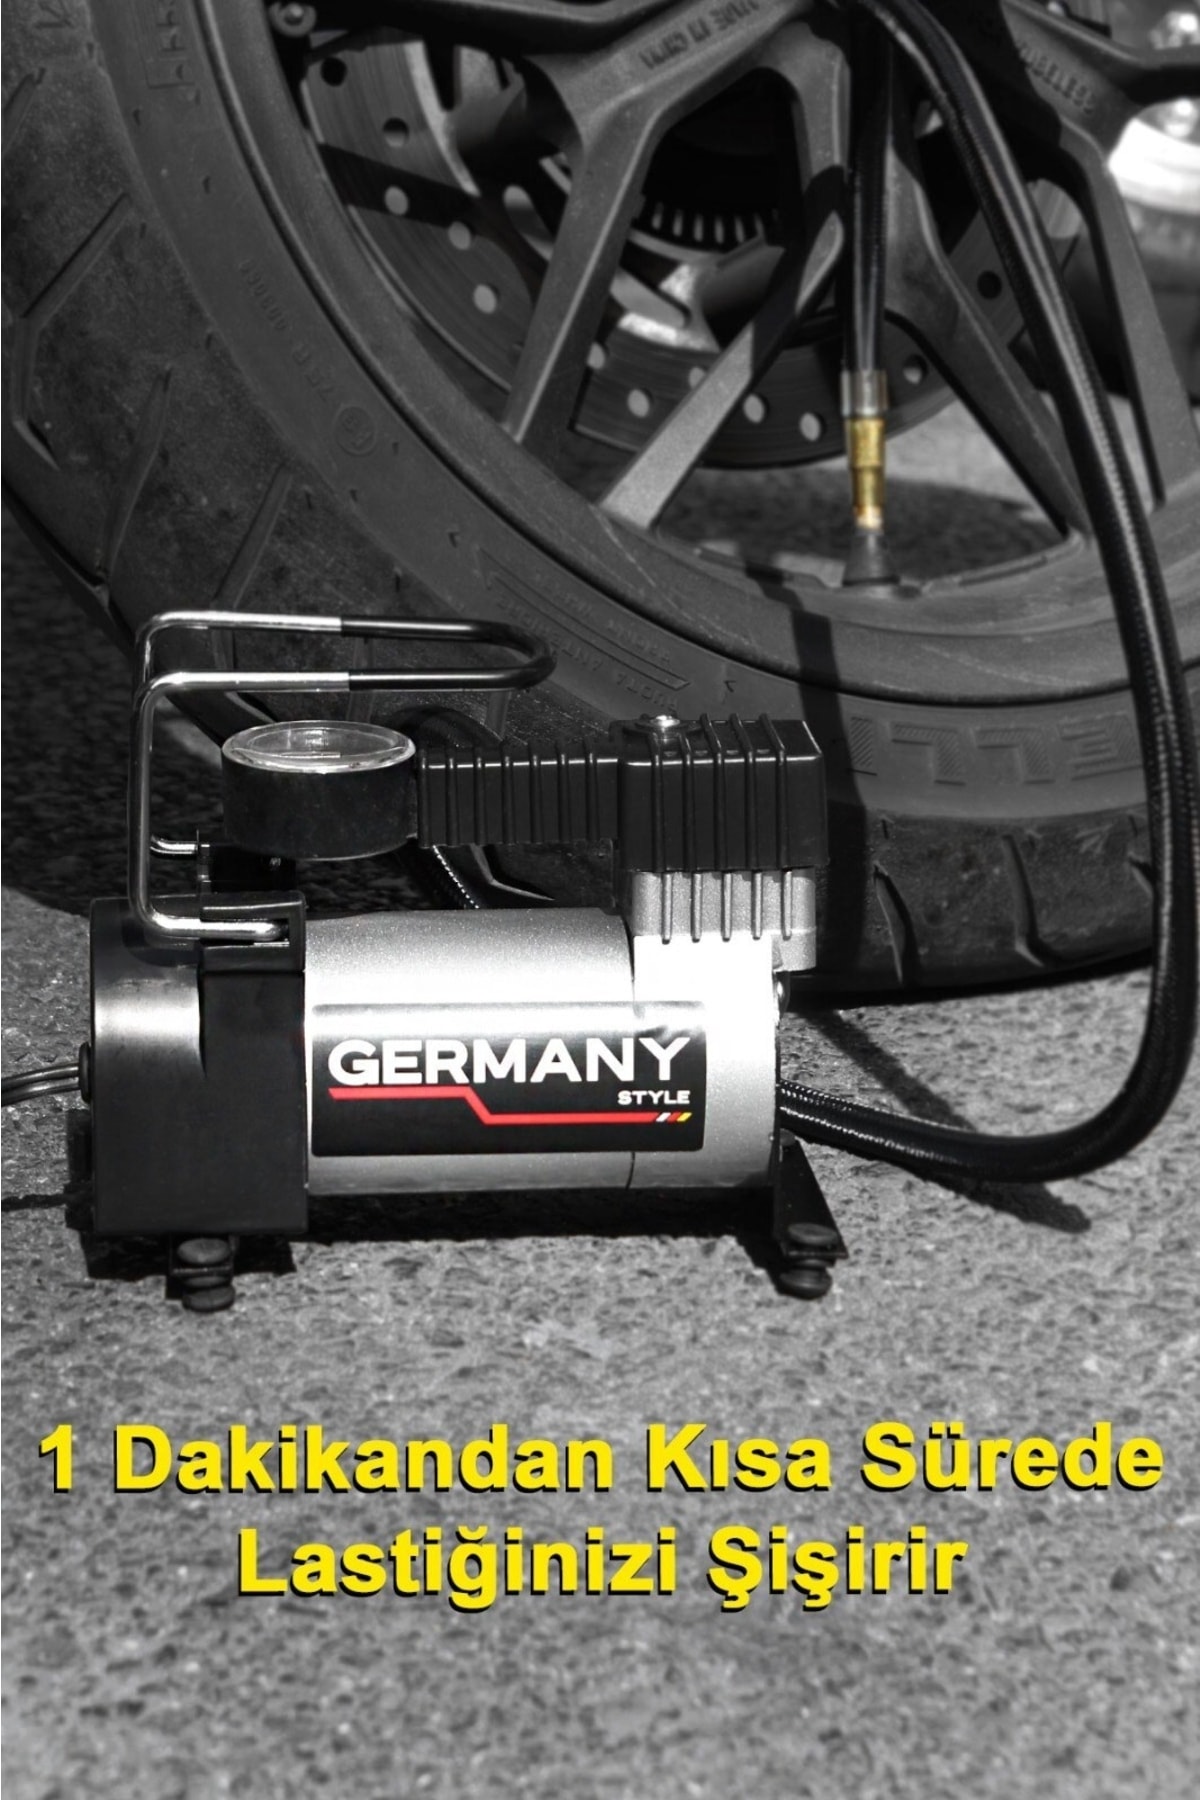 Germany Style 12 V Araba Oto Araç Lastik Şişirme Pompası 160 Psi Metal Gövde Kompresör